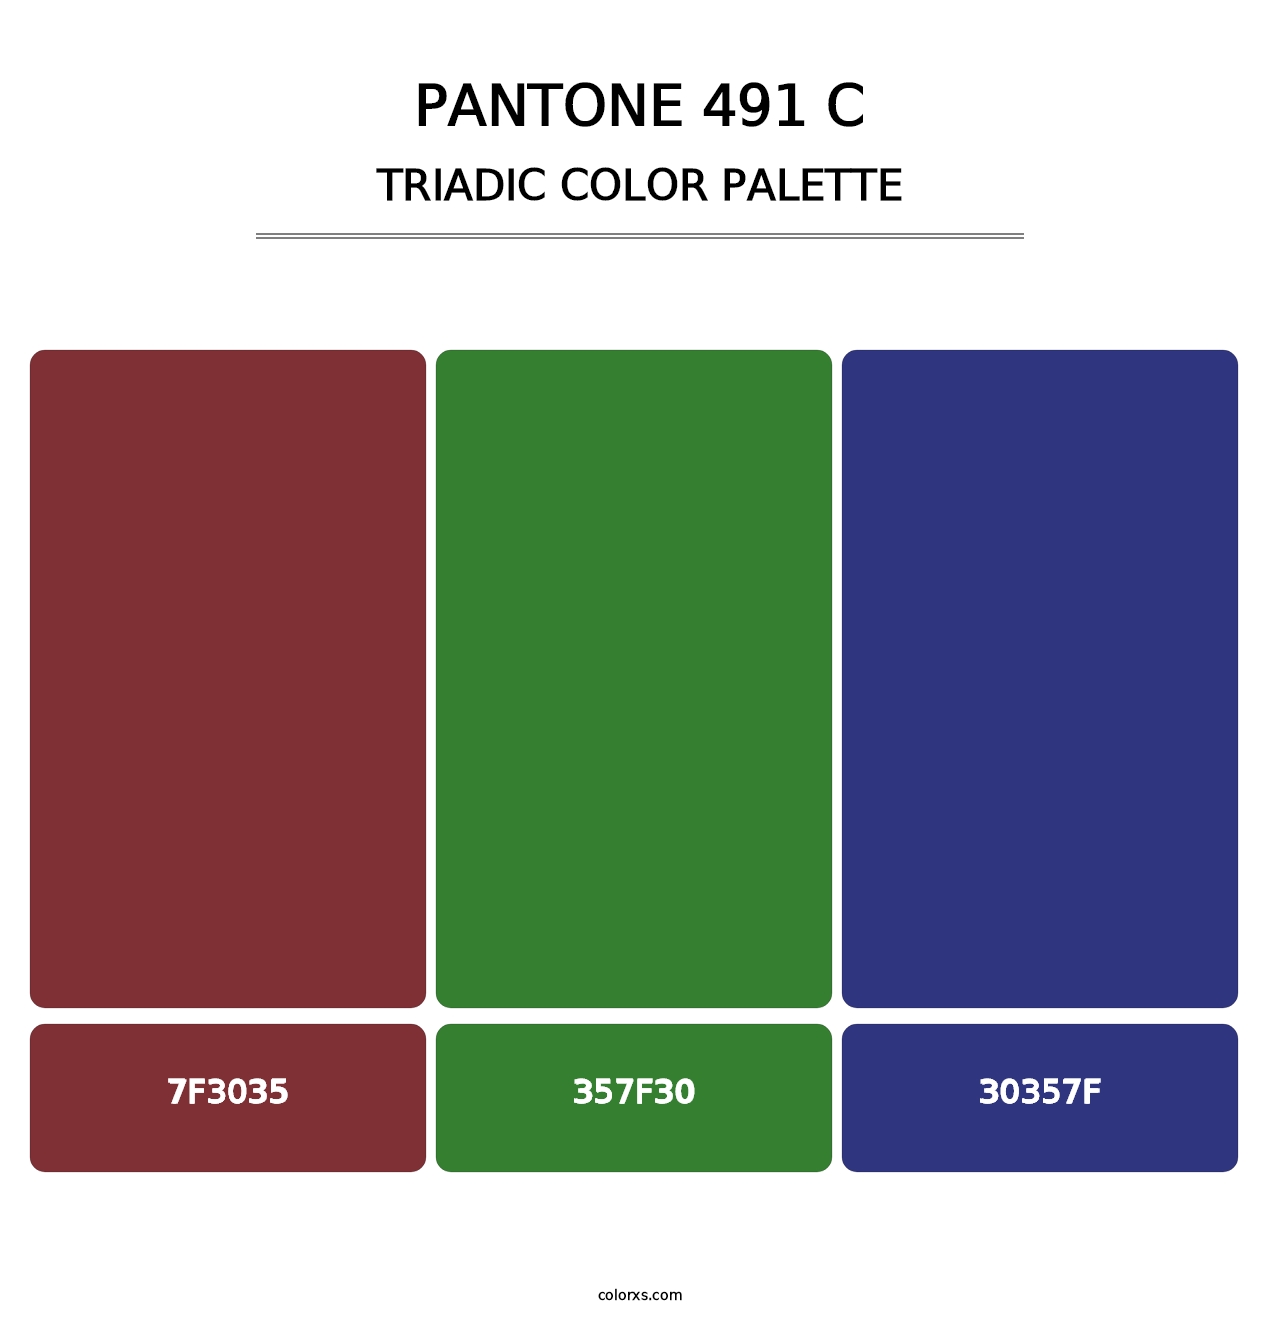 PANTONE 491 C - Triadic Color Palette